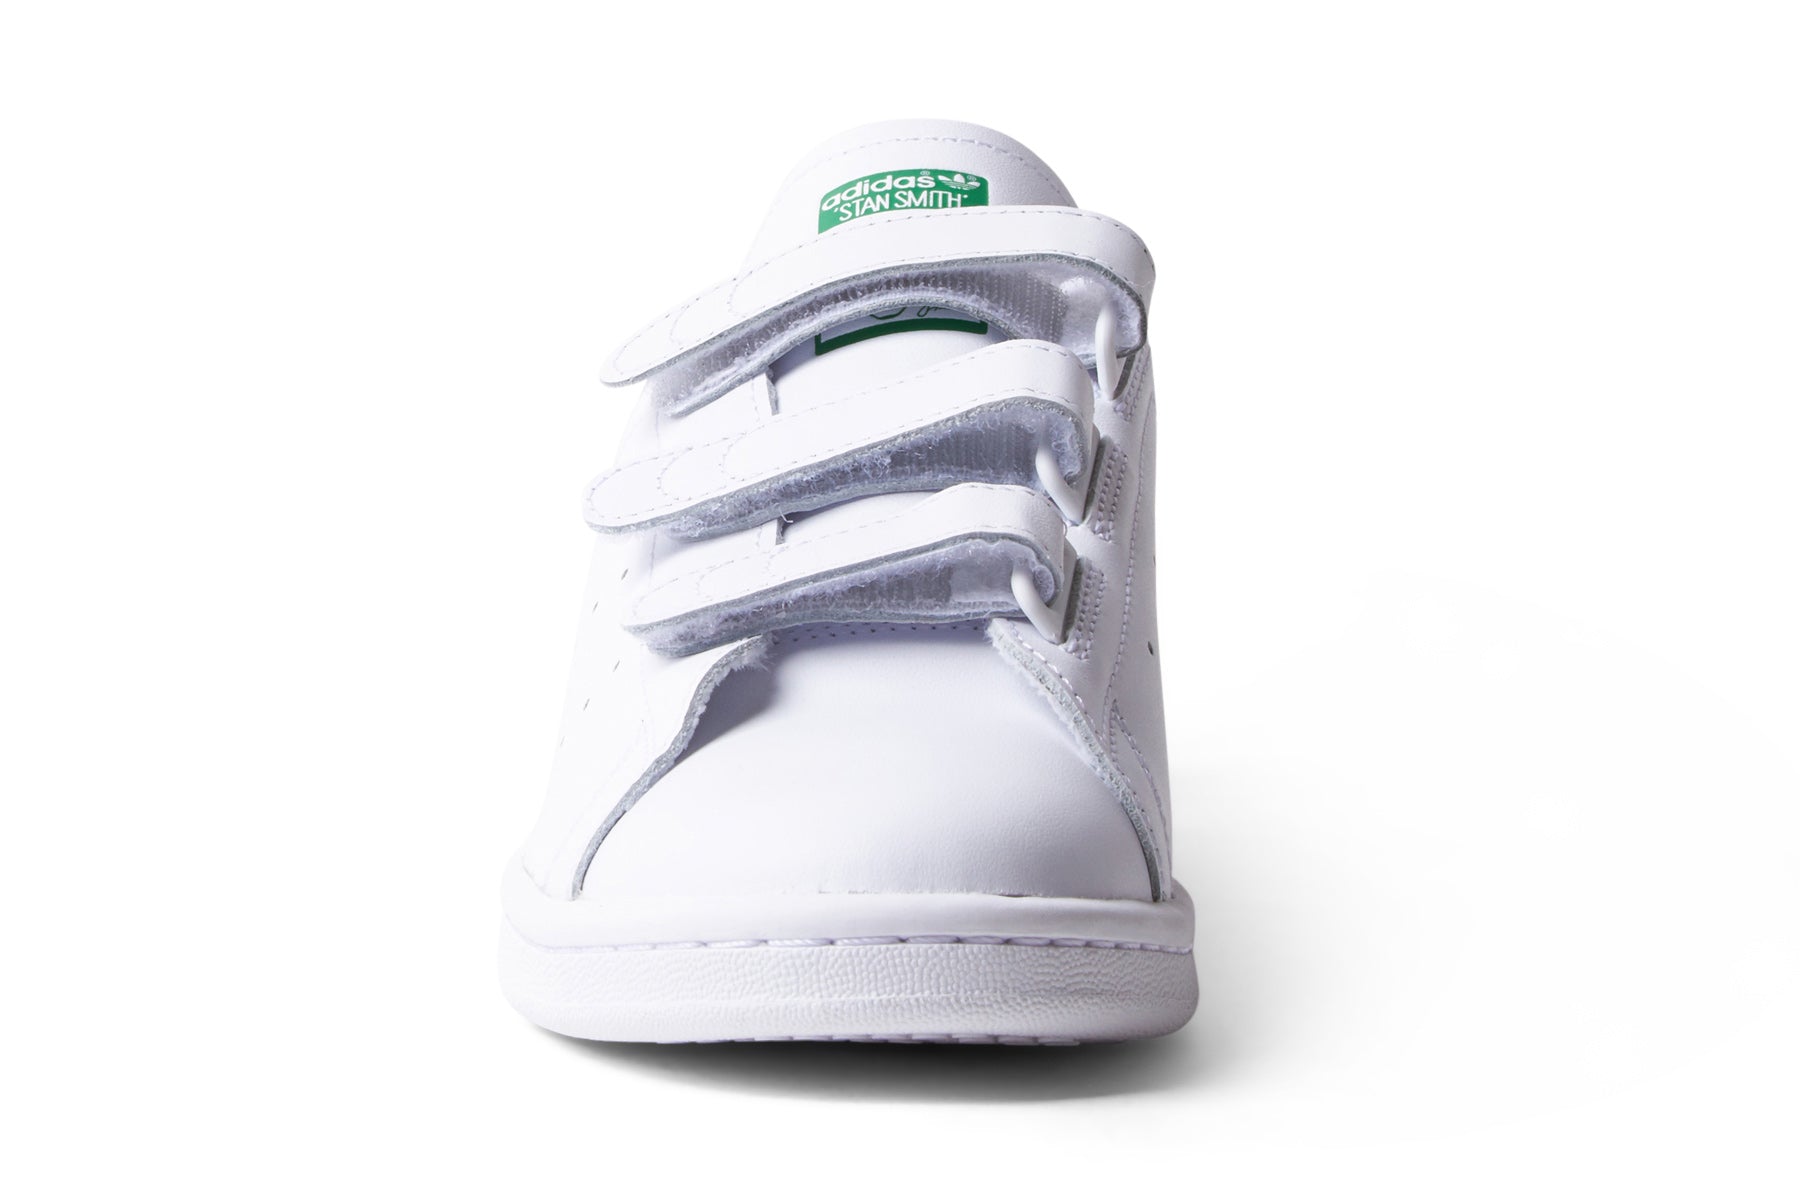 Adidas Stan Smith CF - White/Green